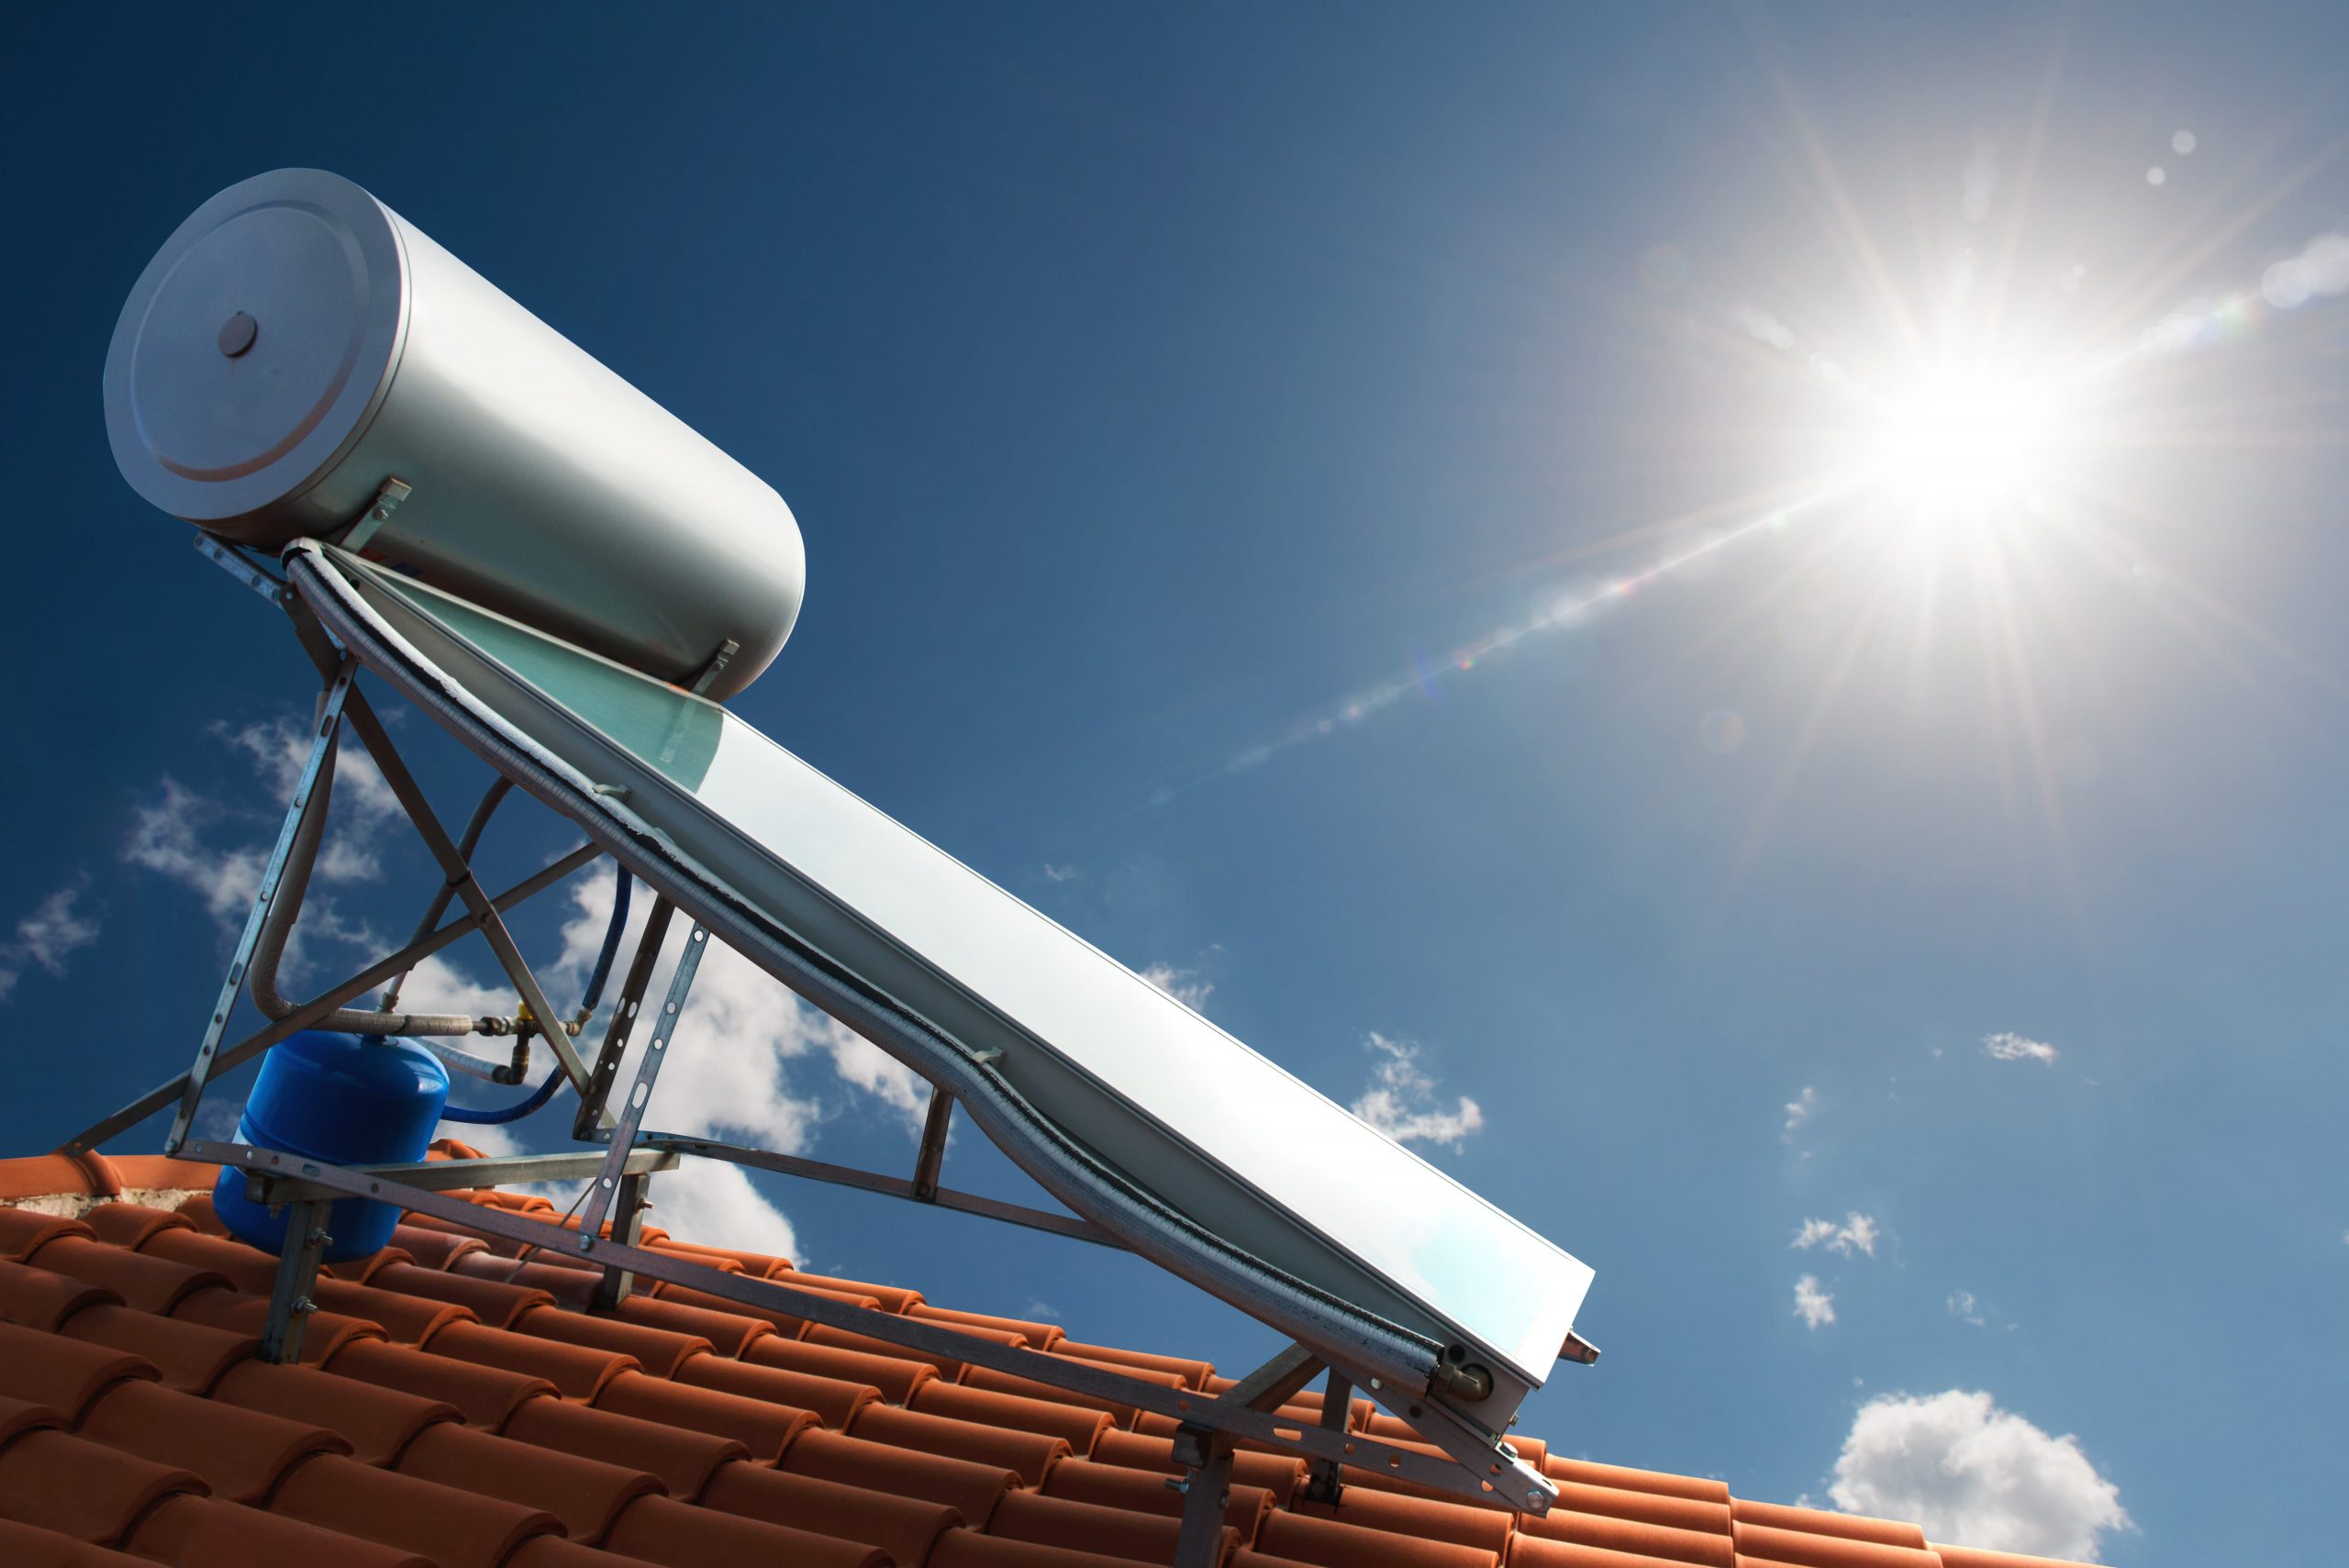 Προκήρυξη Σχεδίου Χορηγιών για εγκατάσταση ή αντικατάσταση ηλιακού θερμοσίφωνα σε κατοικίες